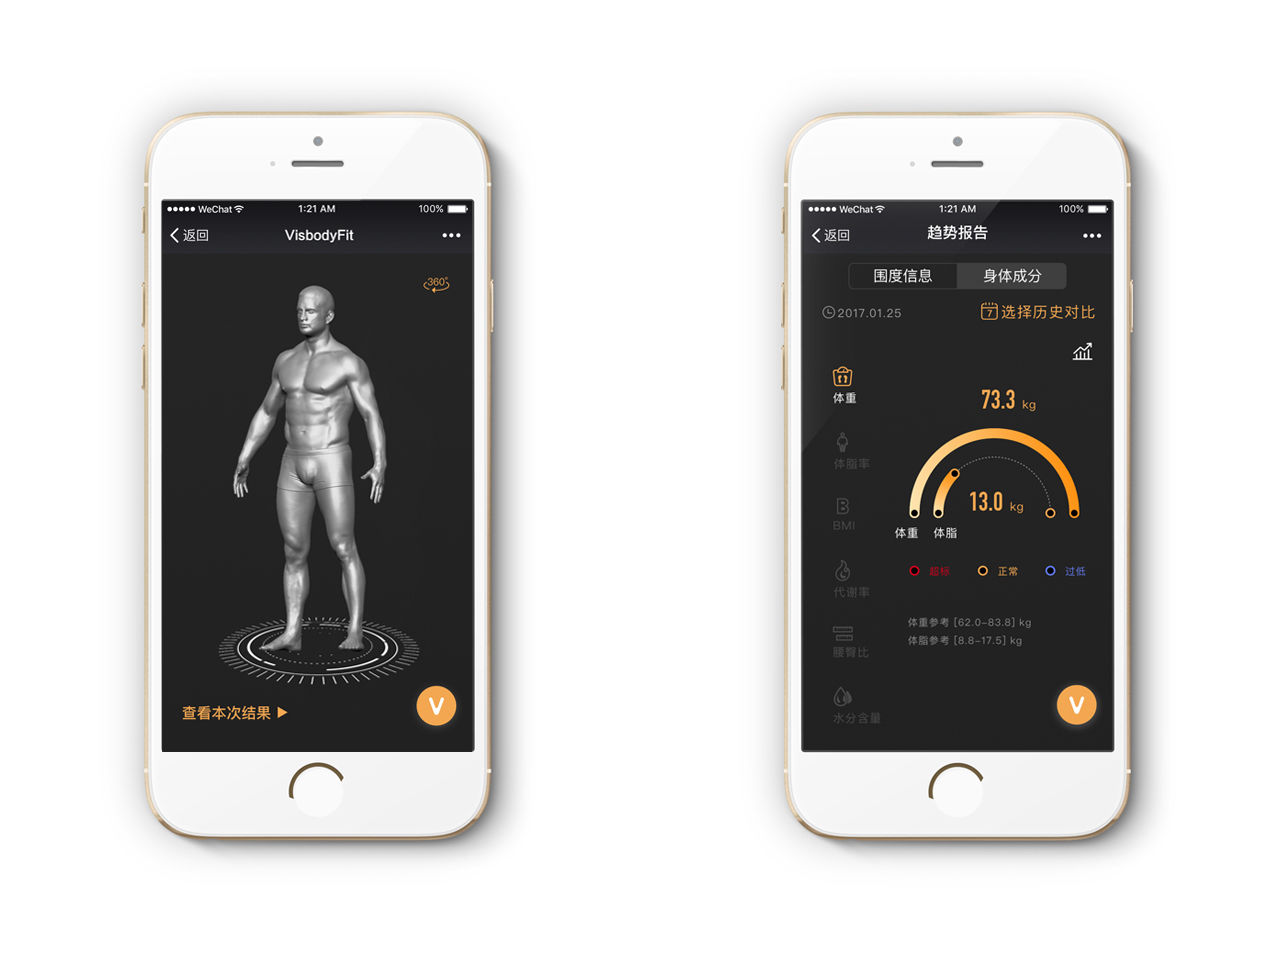 维塑发布 3D 体型追踪仪想让健身房的体测更有说服力